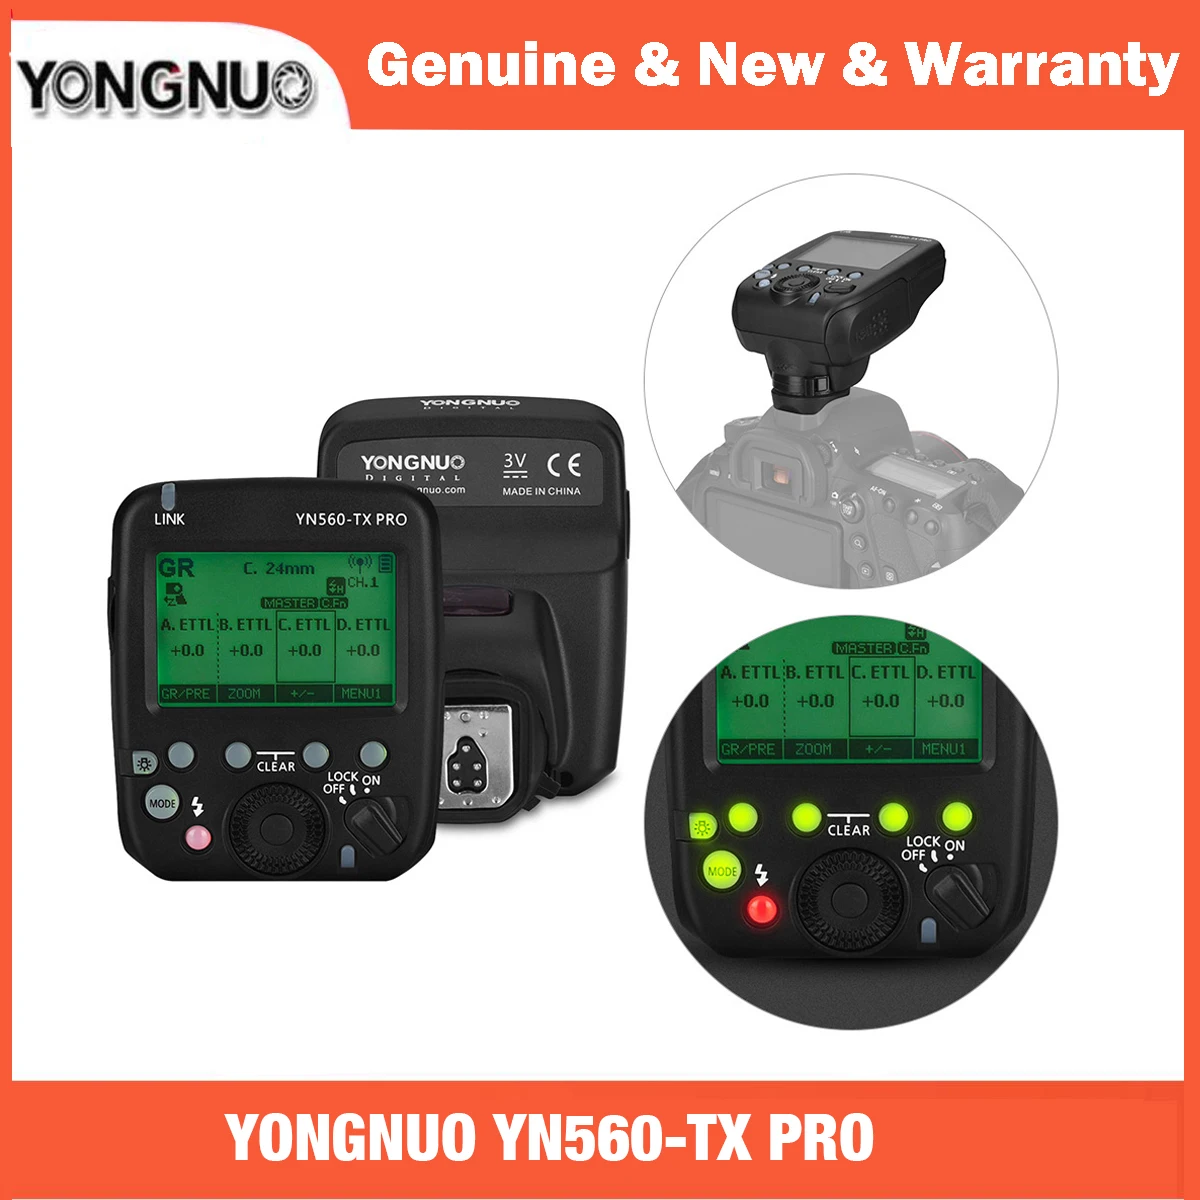 YONGNUO YN560-TX PRO 2.4G On-camera Flash Trigger Wireless Transmitter for Canon DSLR Camera YN862/YN968/YN200/YN560 Speedlite